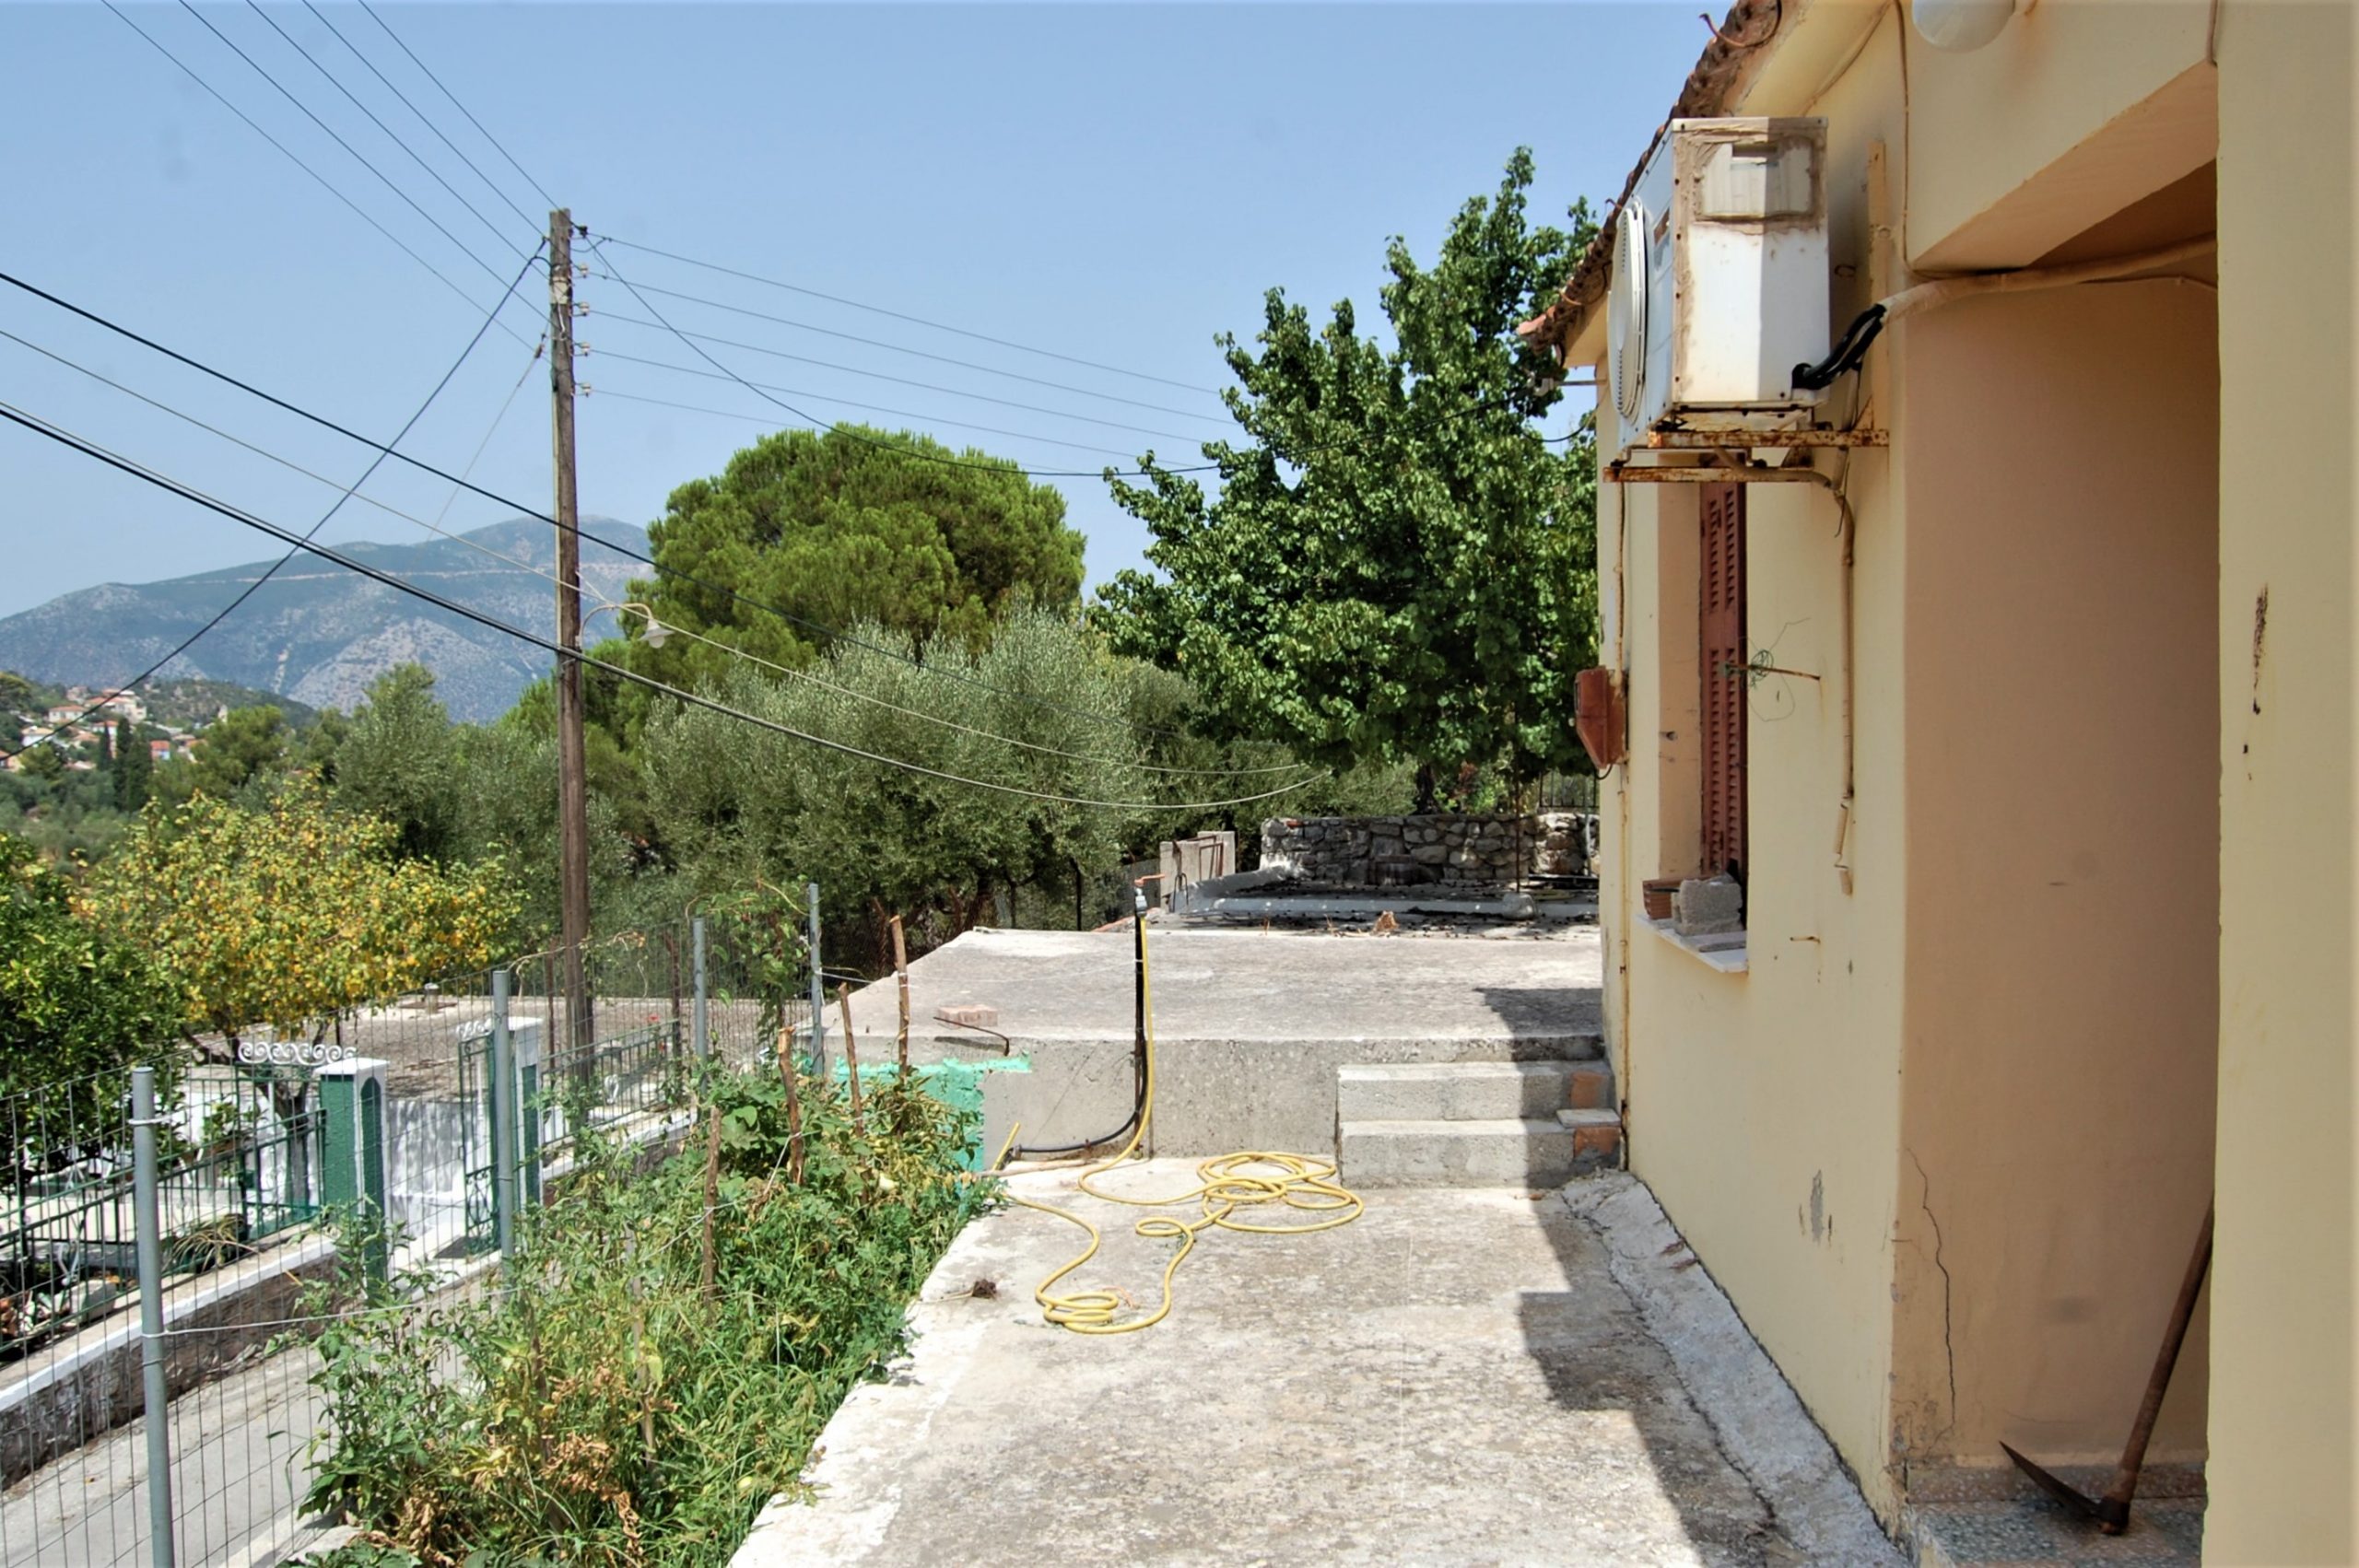 Πλευρικός εξωτερικός χώρος κατοικίας προς πώληση Ιθάκι Ελλάδα, Βαθύ